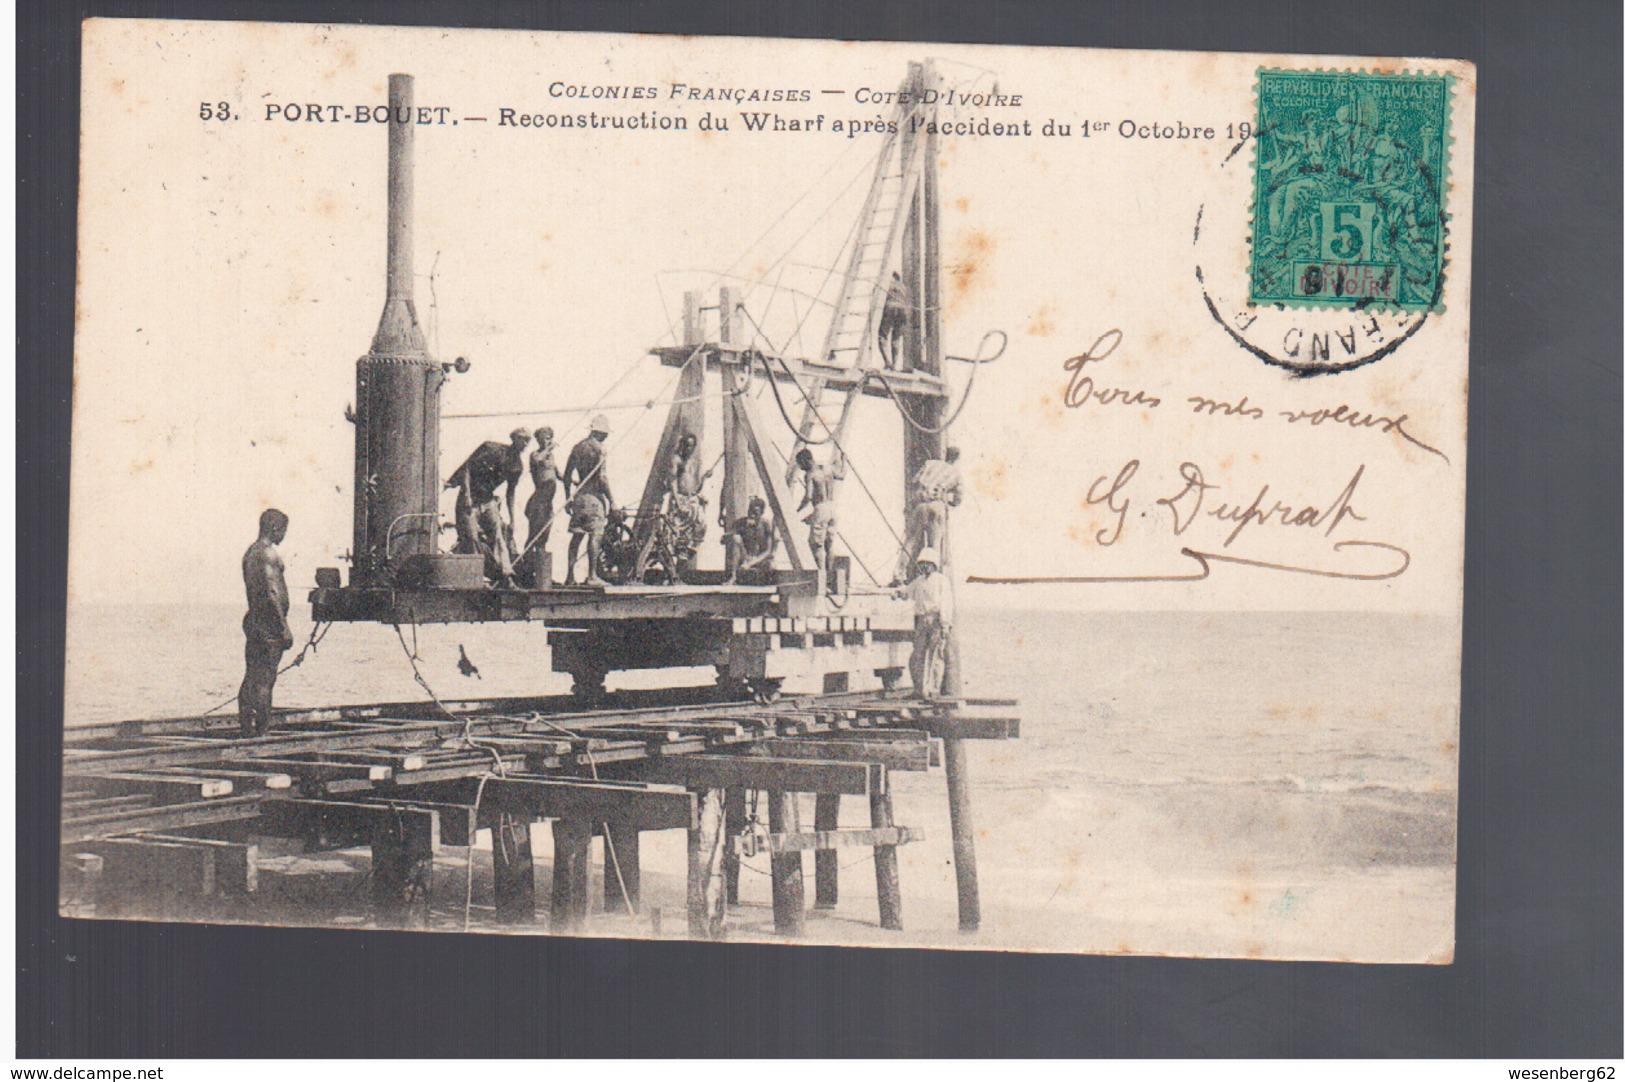 Cote D'Ivoire Port- Bouet - Reconstruction Du Wharf Après L'accident Du 1er Octobre 1905 Old Postcard - Côte-d'Ivoire